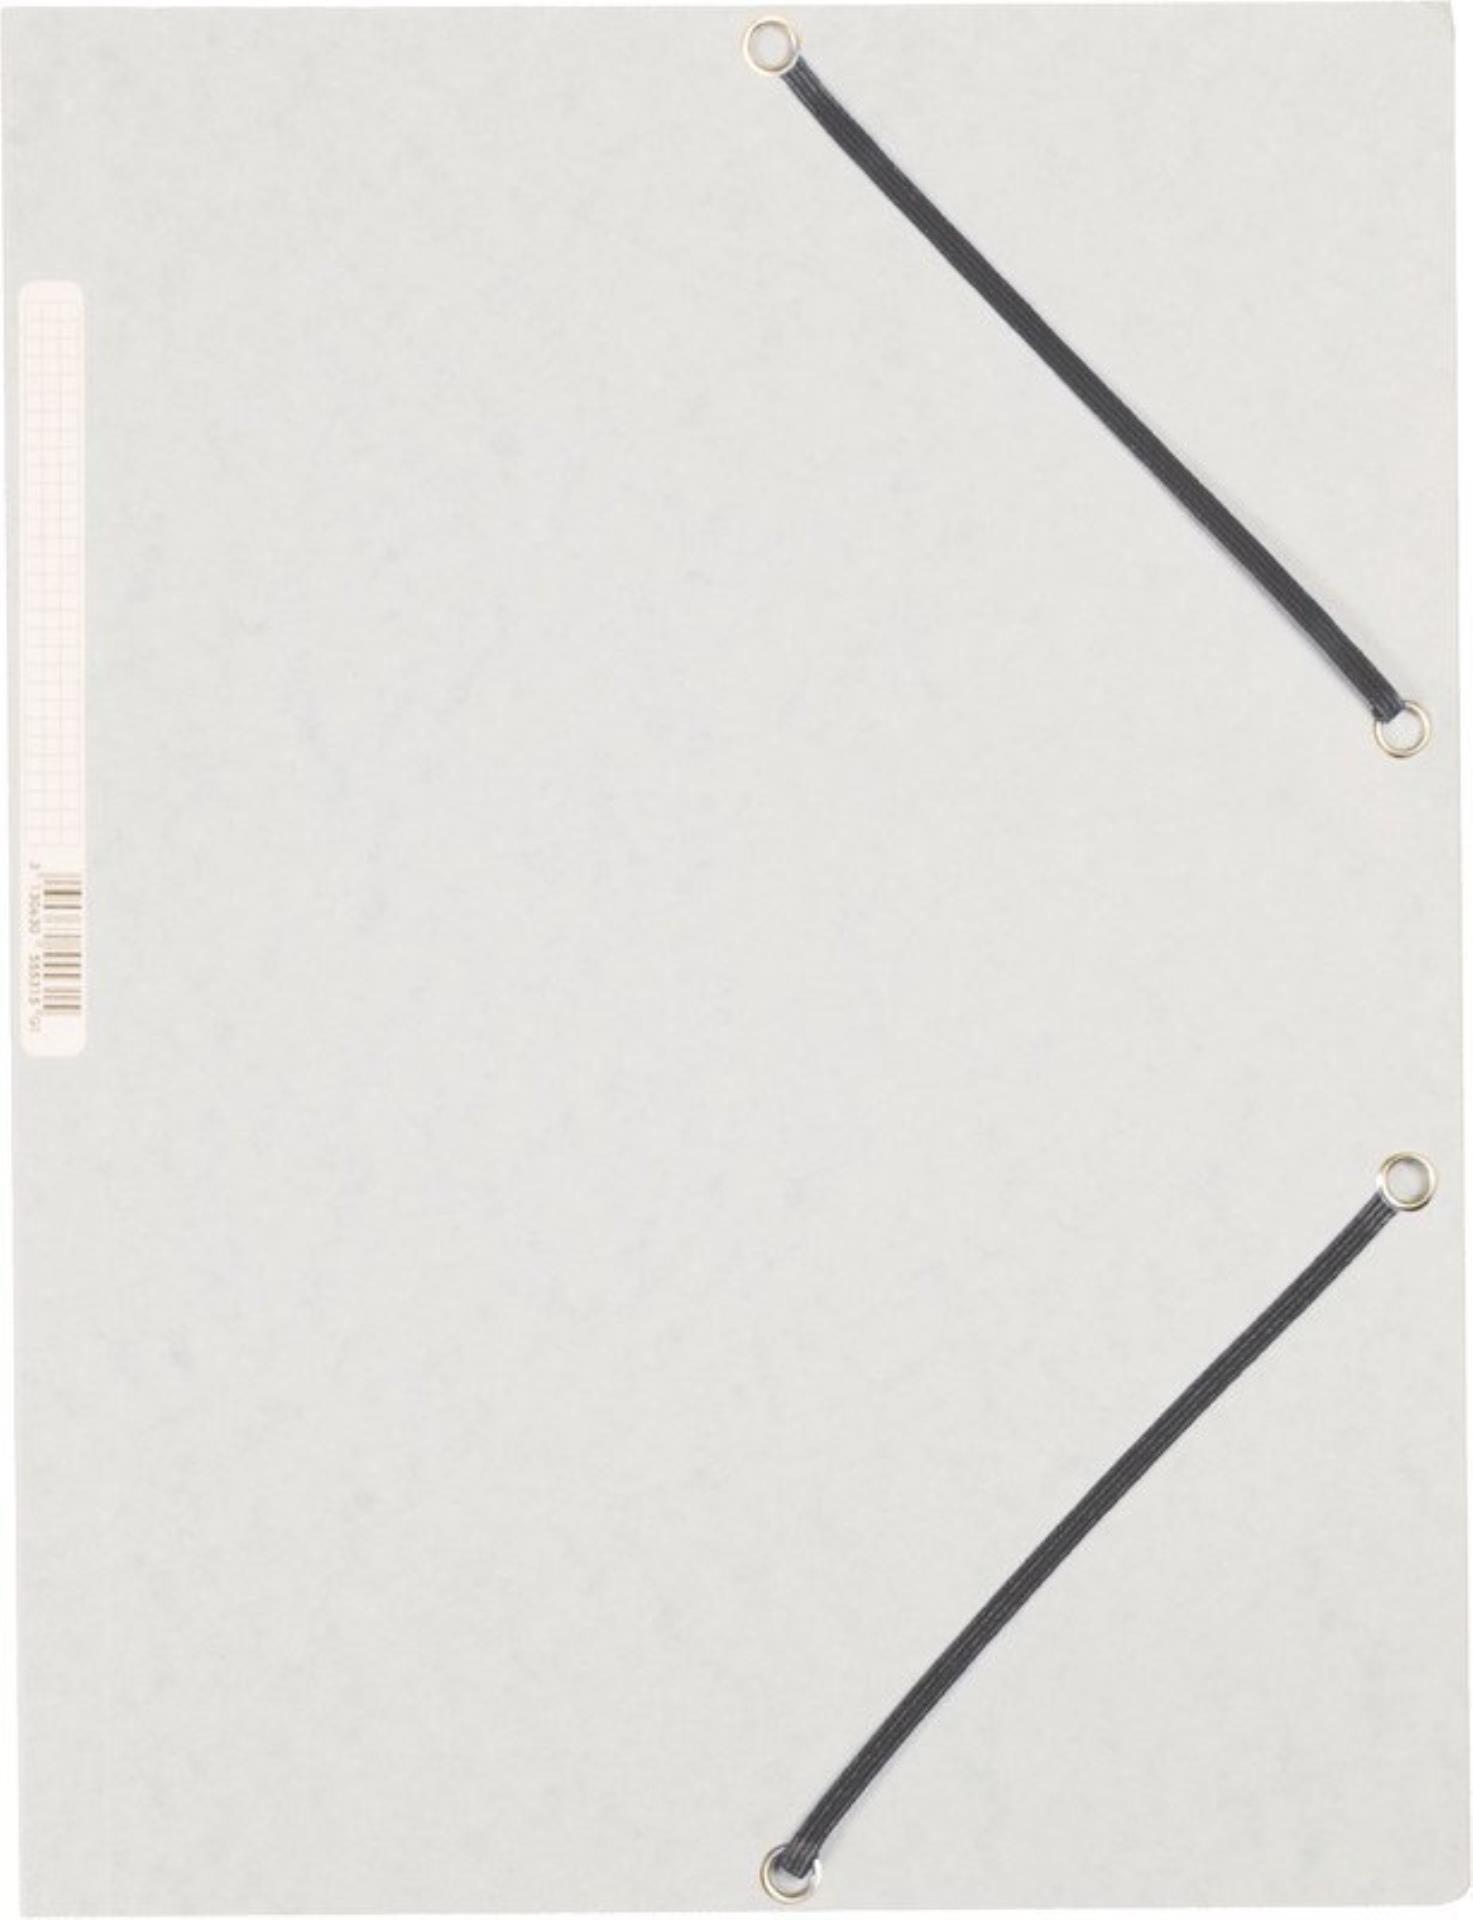 Desky s chlopněmi a gumičkou Q-Connect - A4, bílé, 10 ks